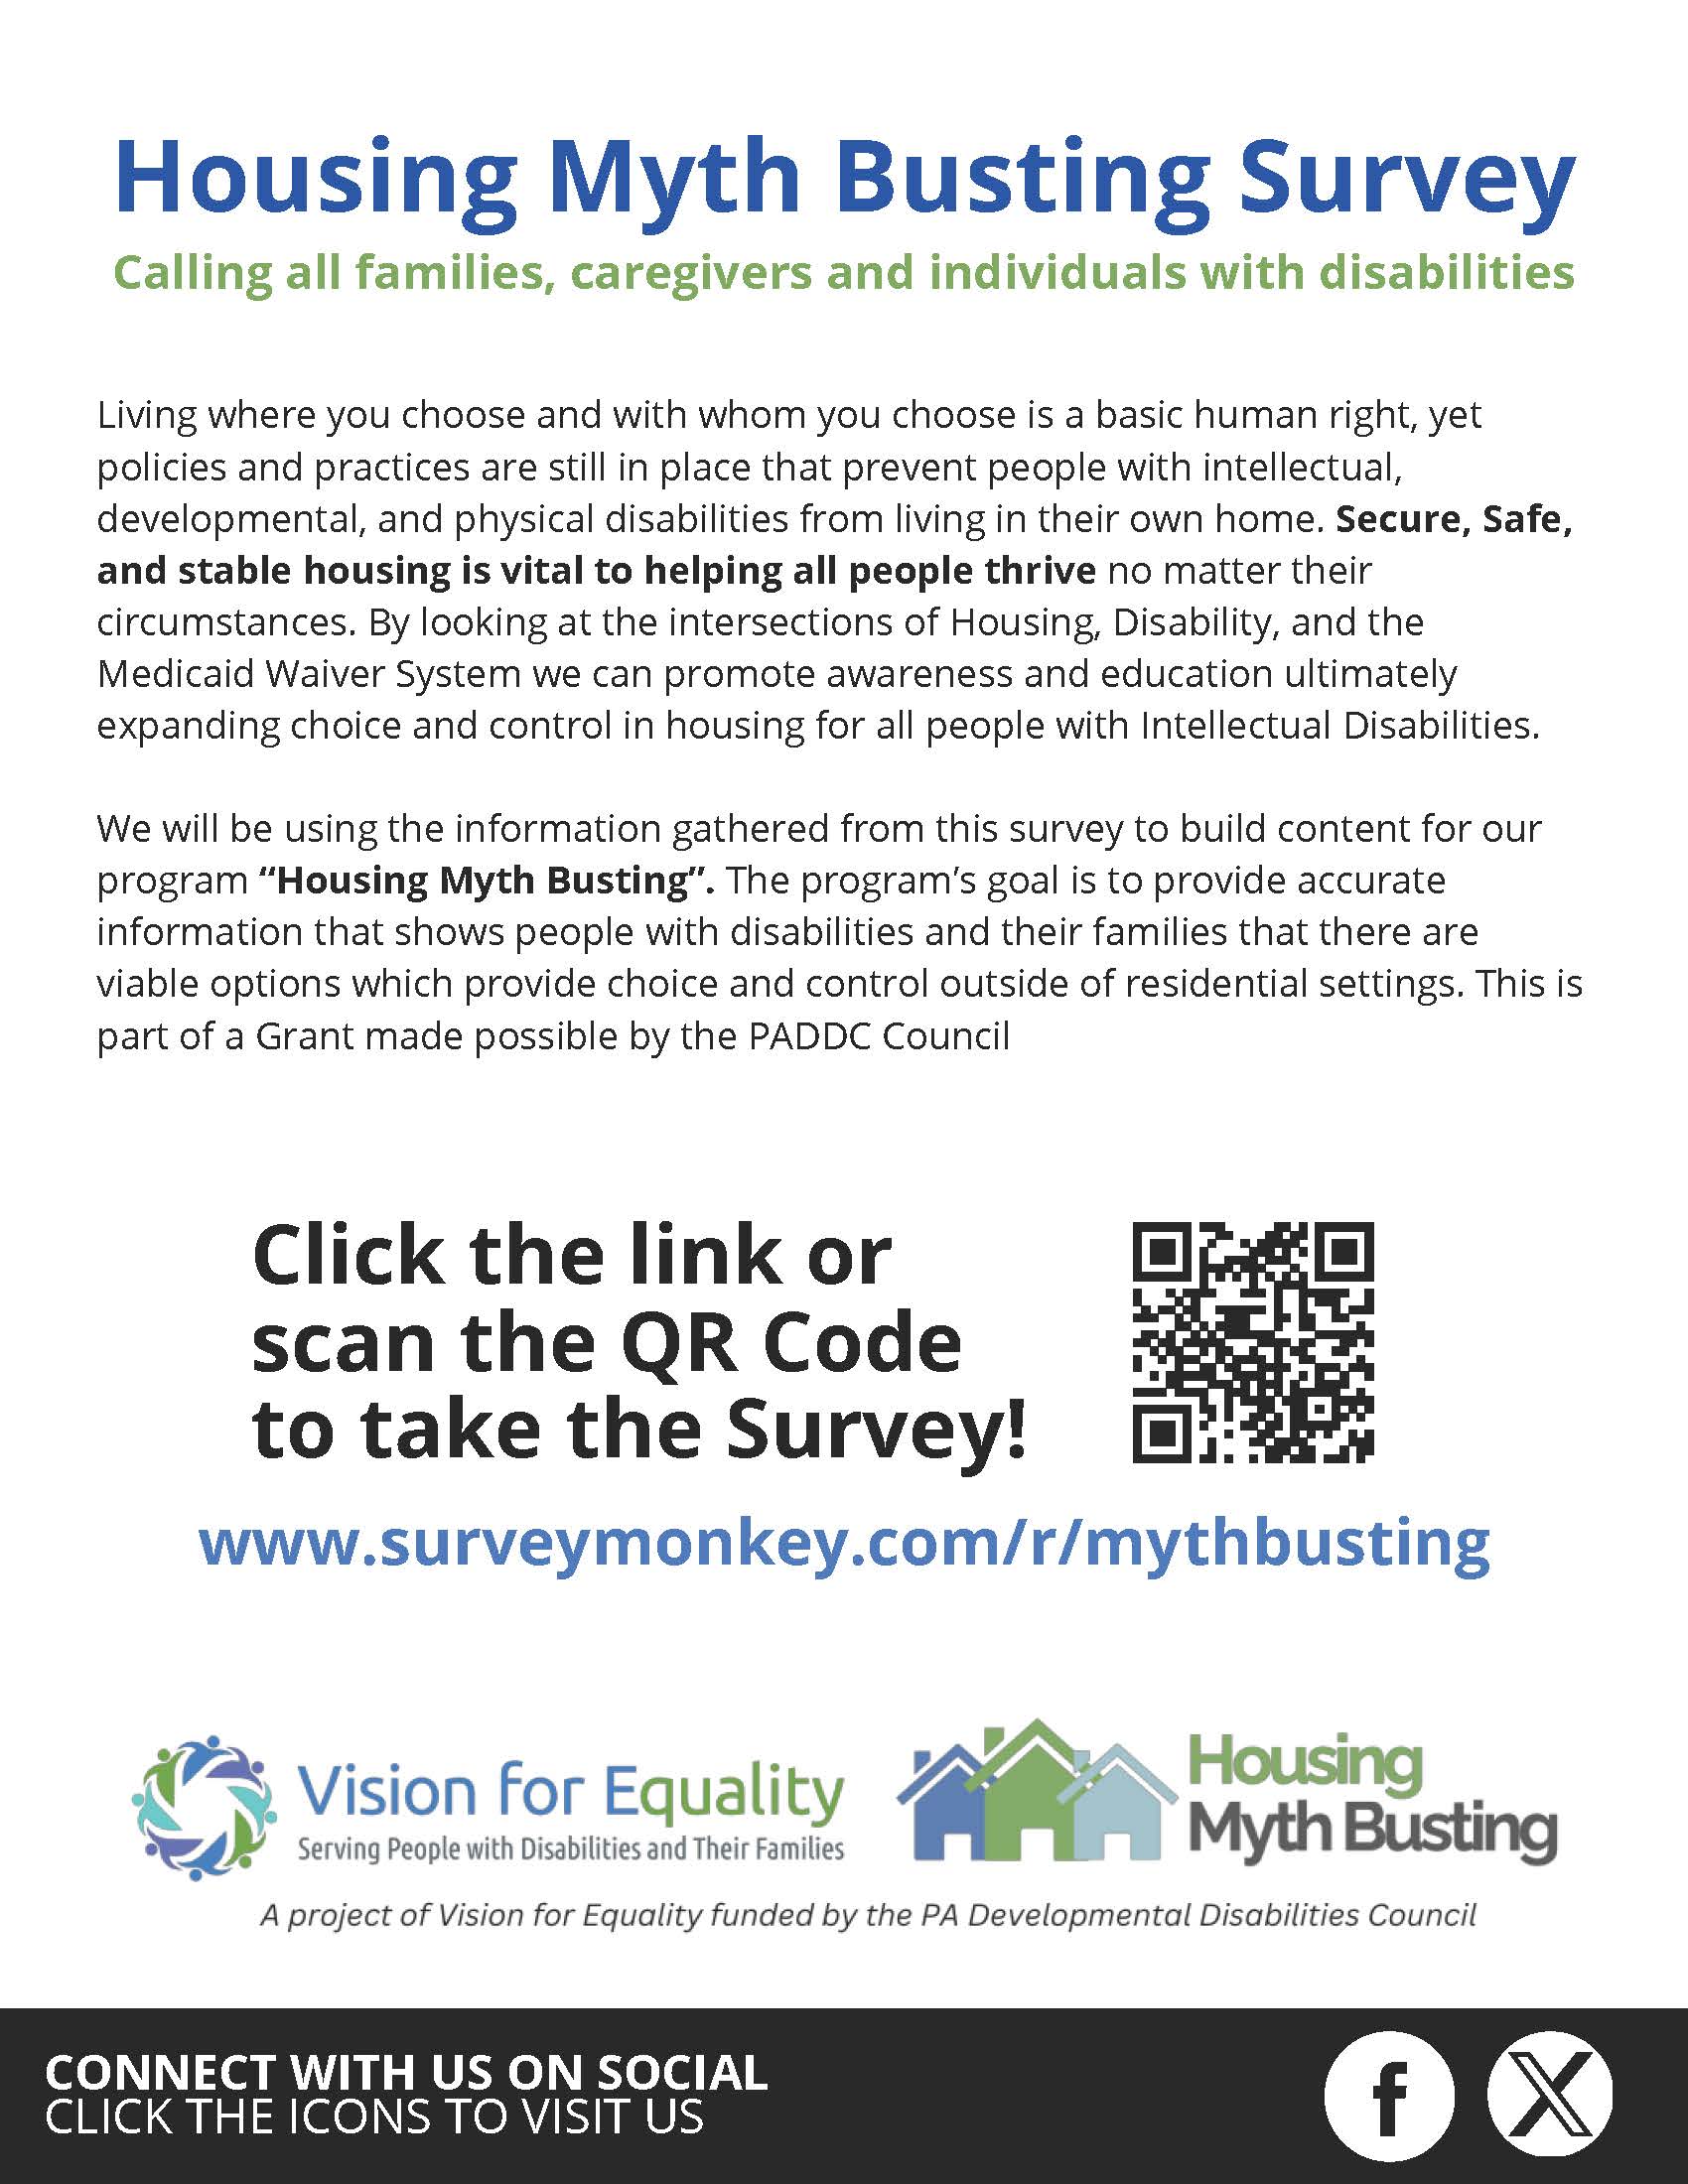 Housing Myth Busting Survey Flyer